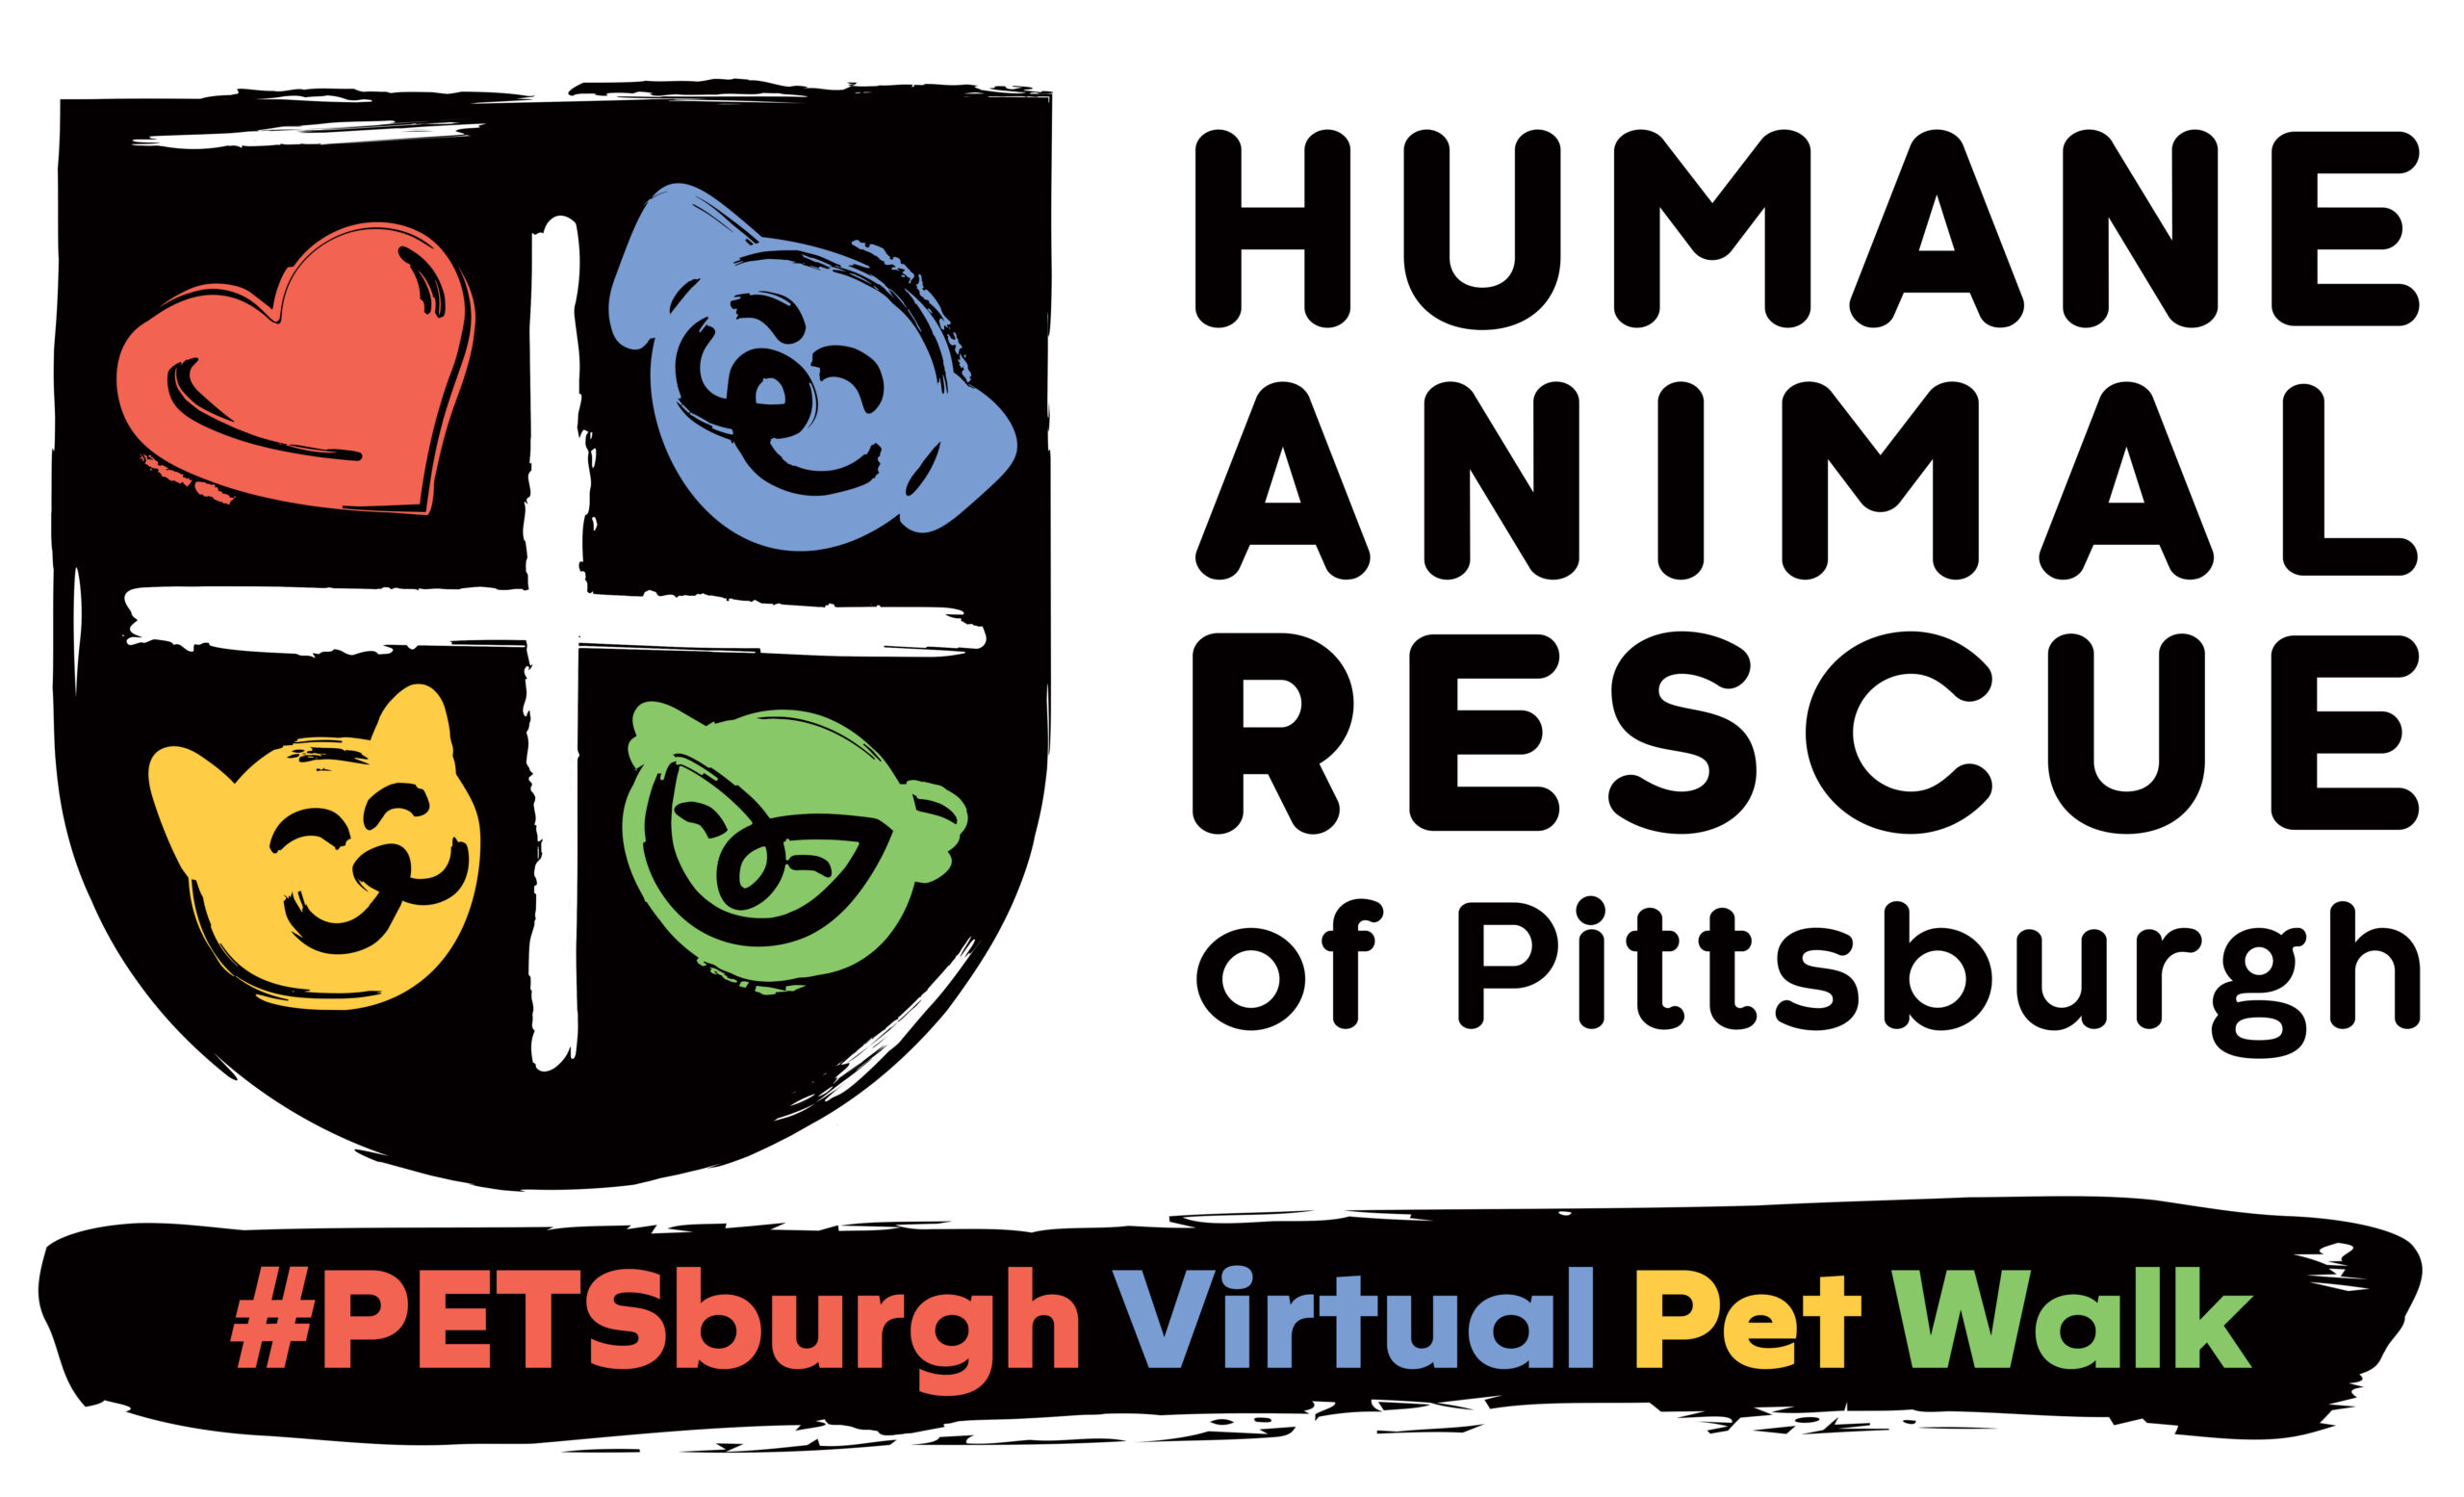 PETSburgh Virtual Pet Walk 2021 - Humane Animal Rescue